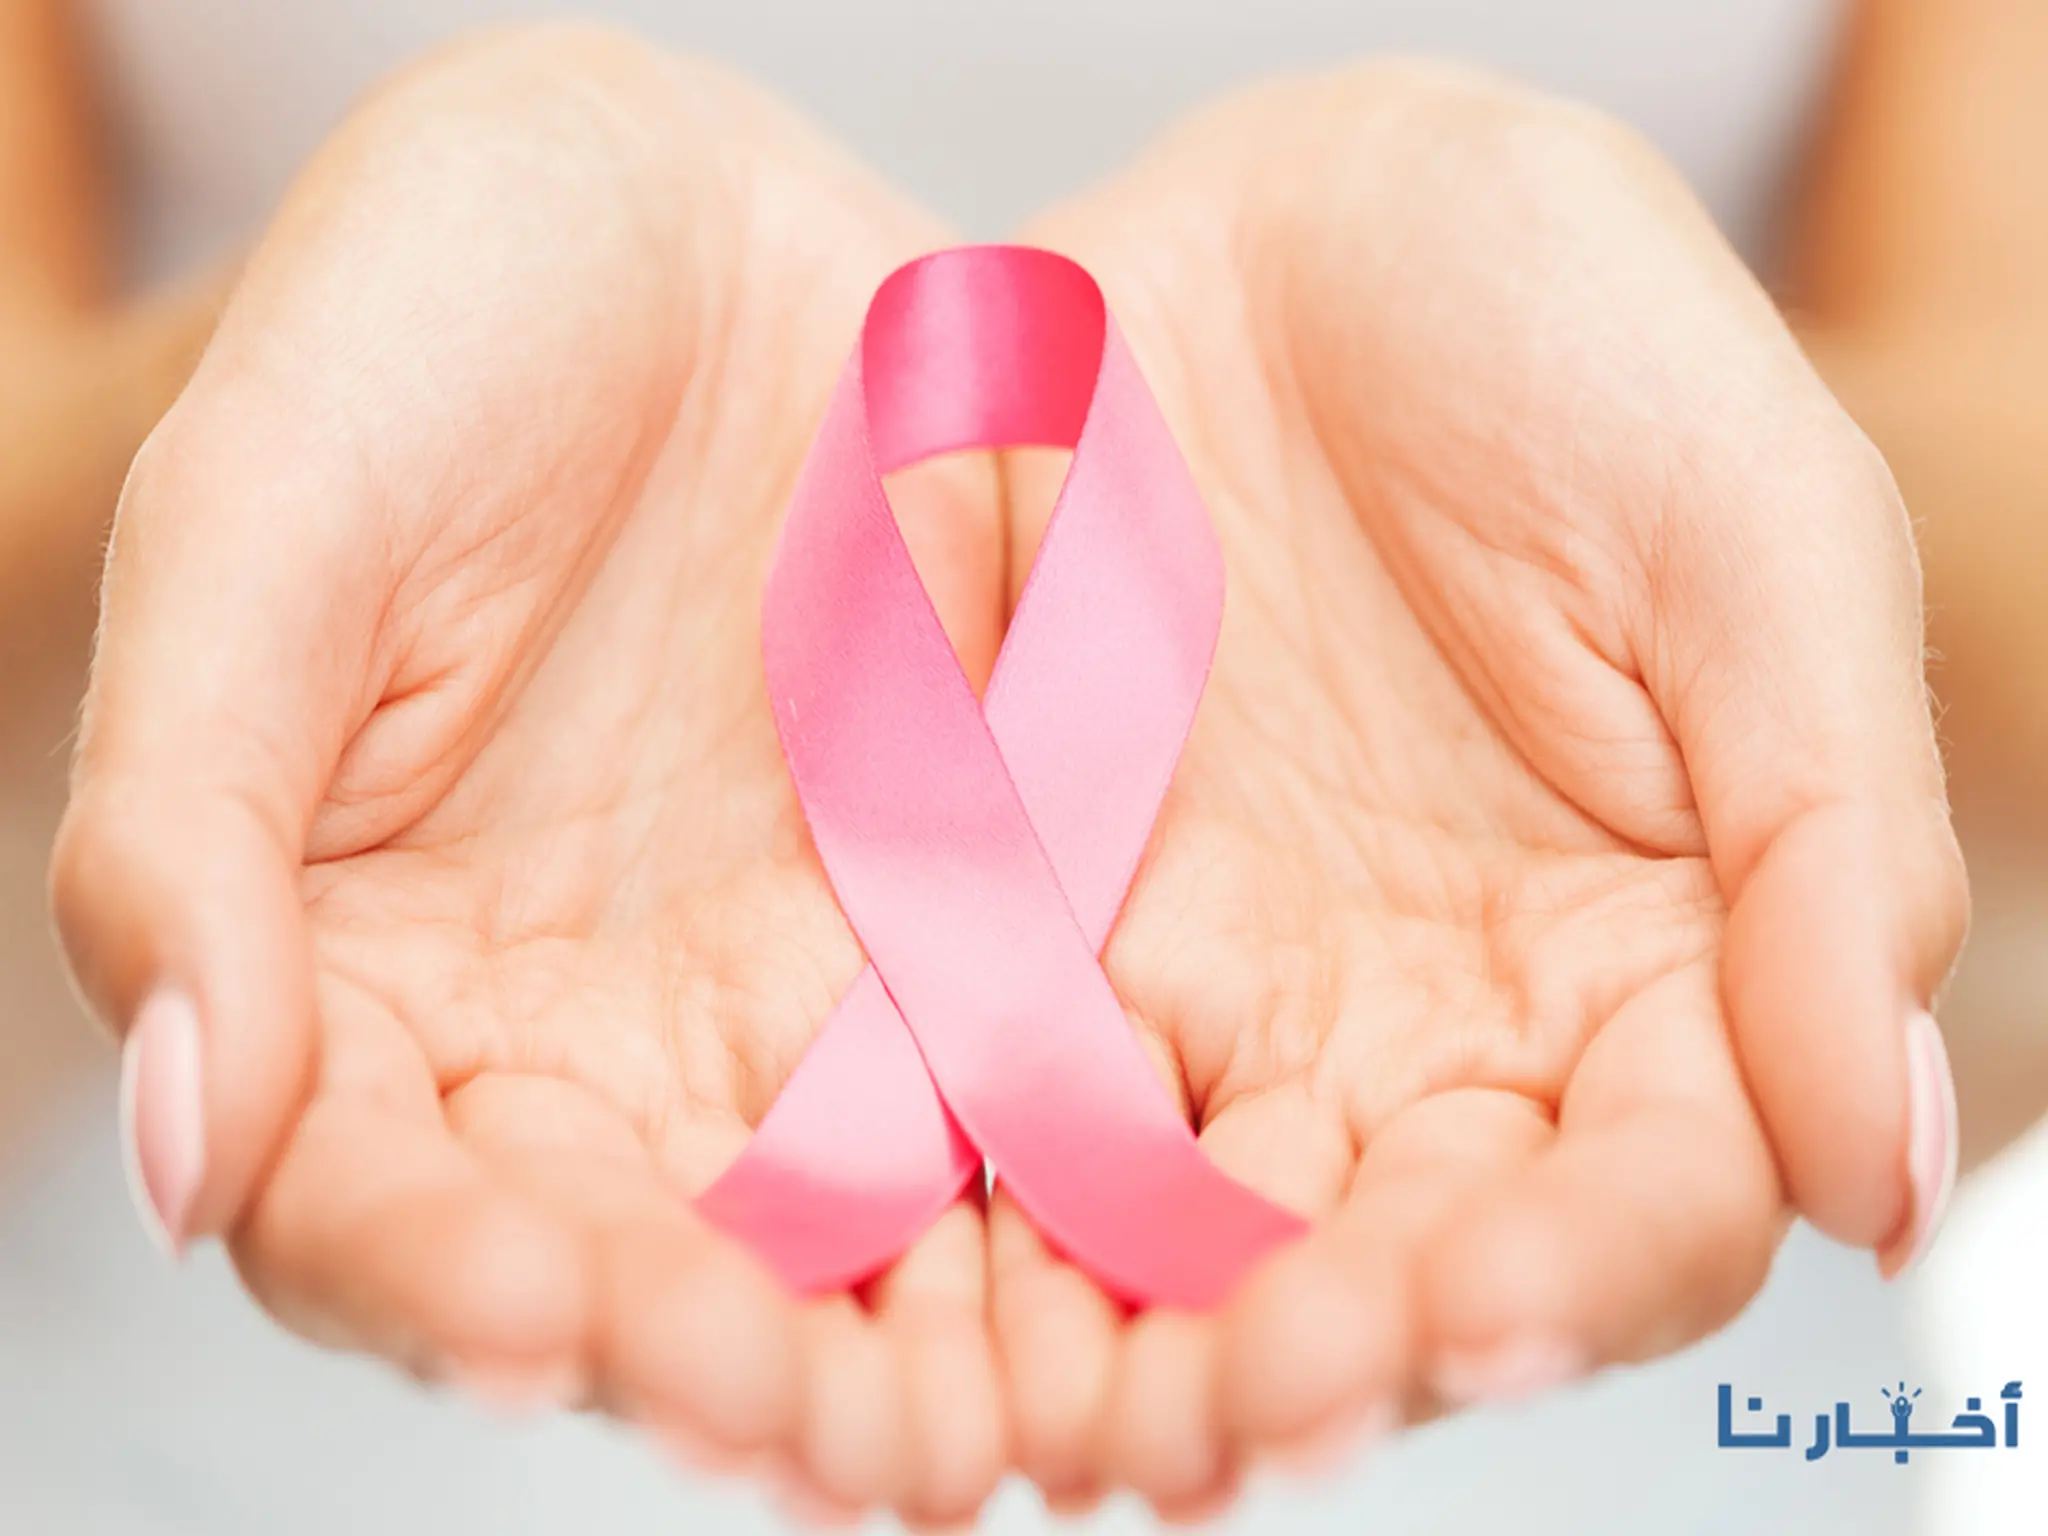 مبادرة الكشف المبكر عن سرطان الثدى تصل إلى ملايين السيدات 